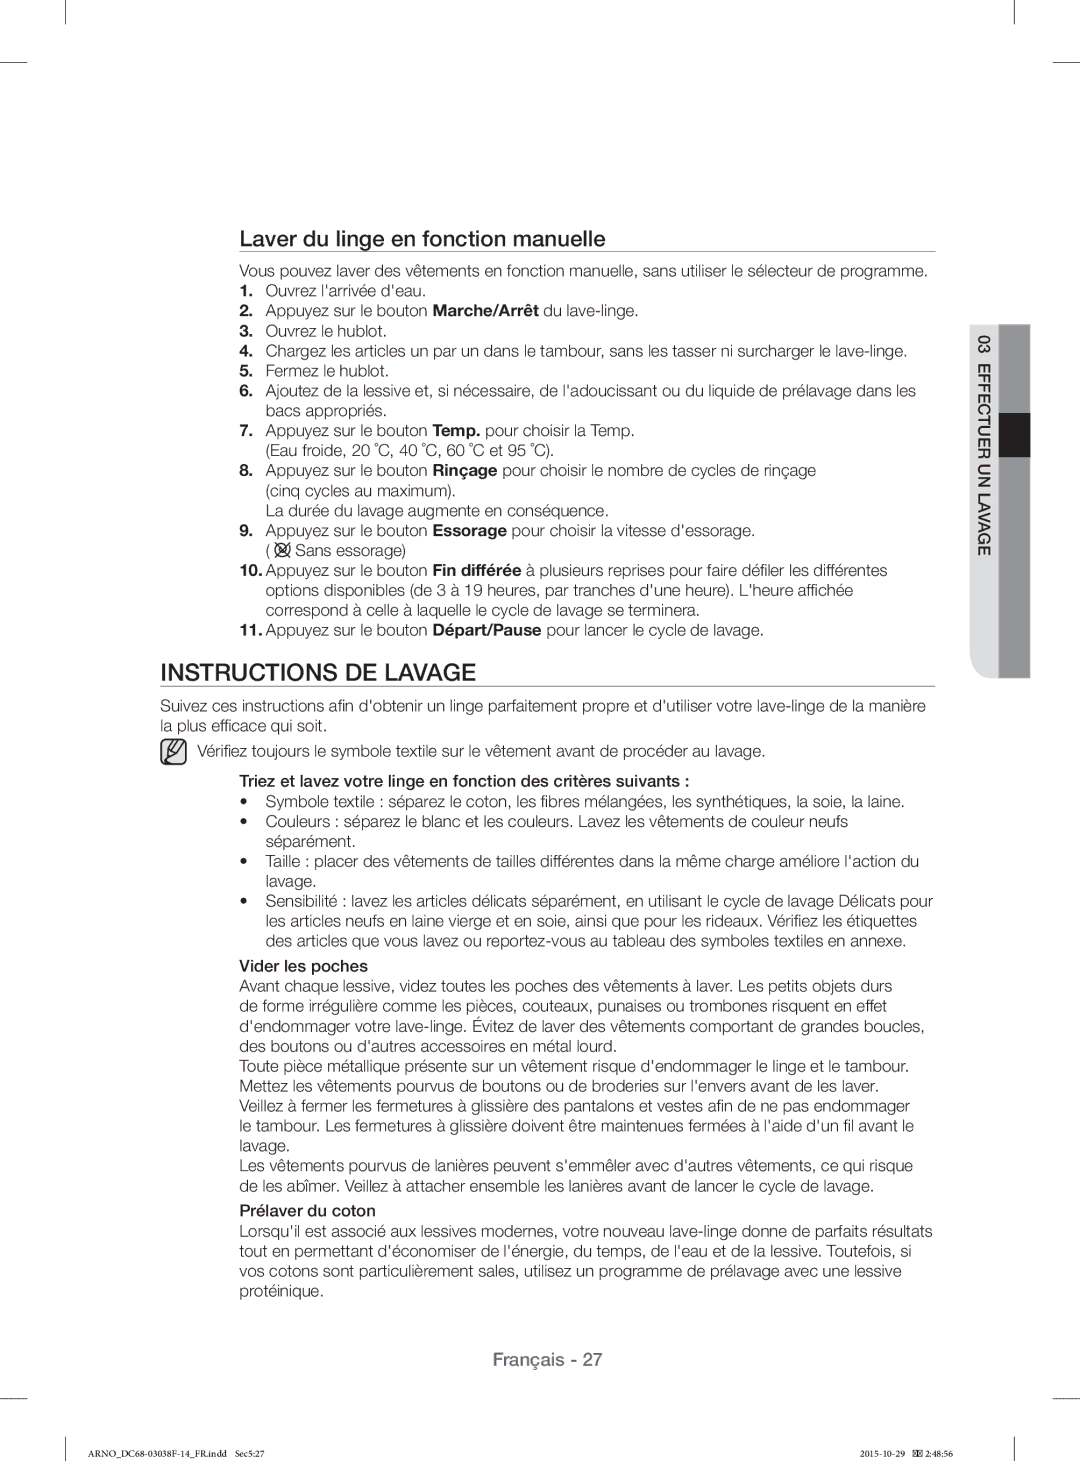 Samsung WF1124ZAC/XEN manual Instructions DE Lavage, Laver du linge en fonction manuelle 